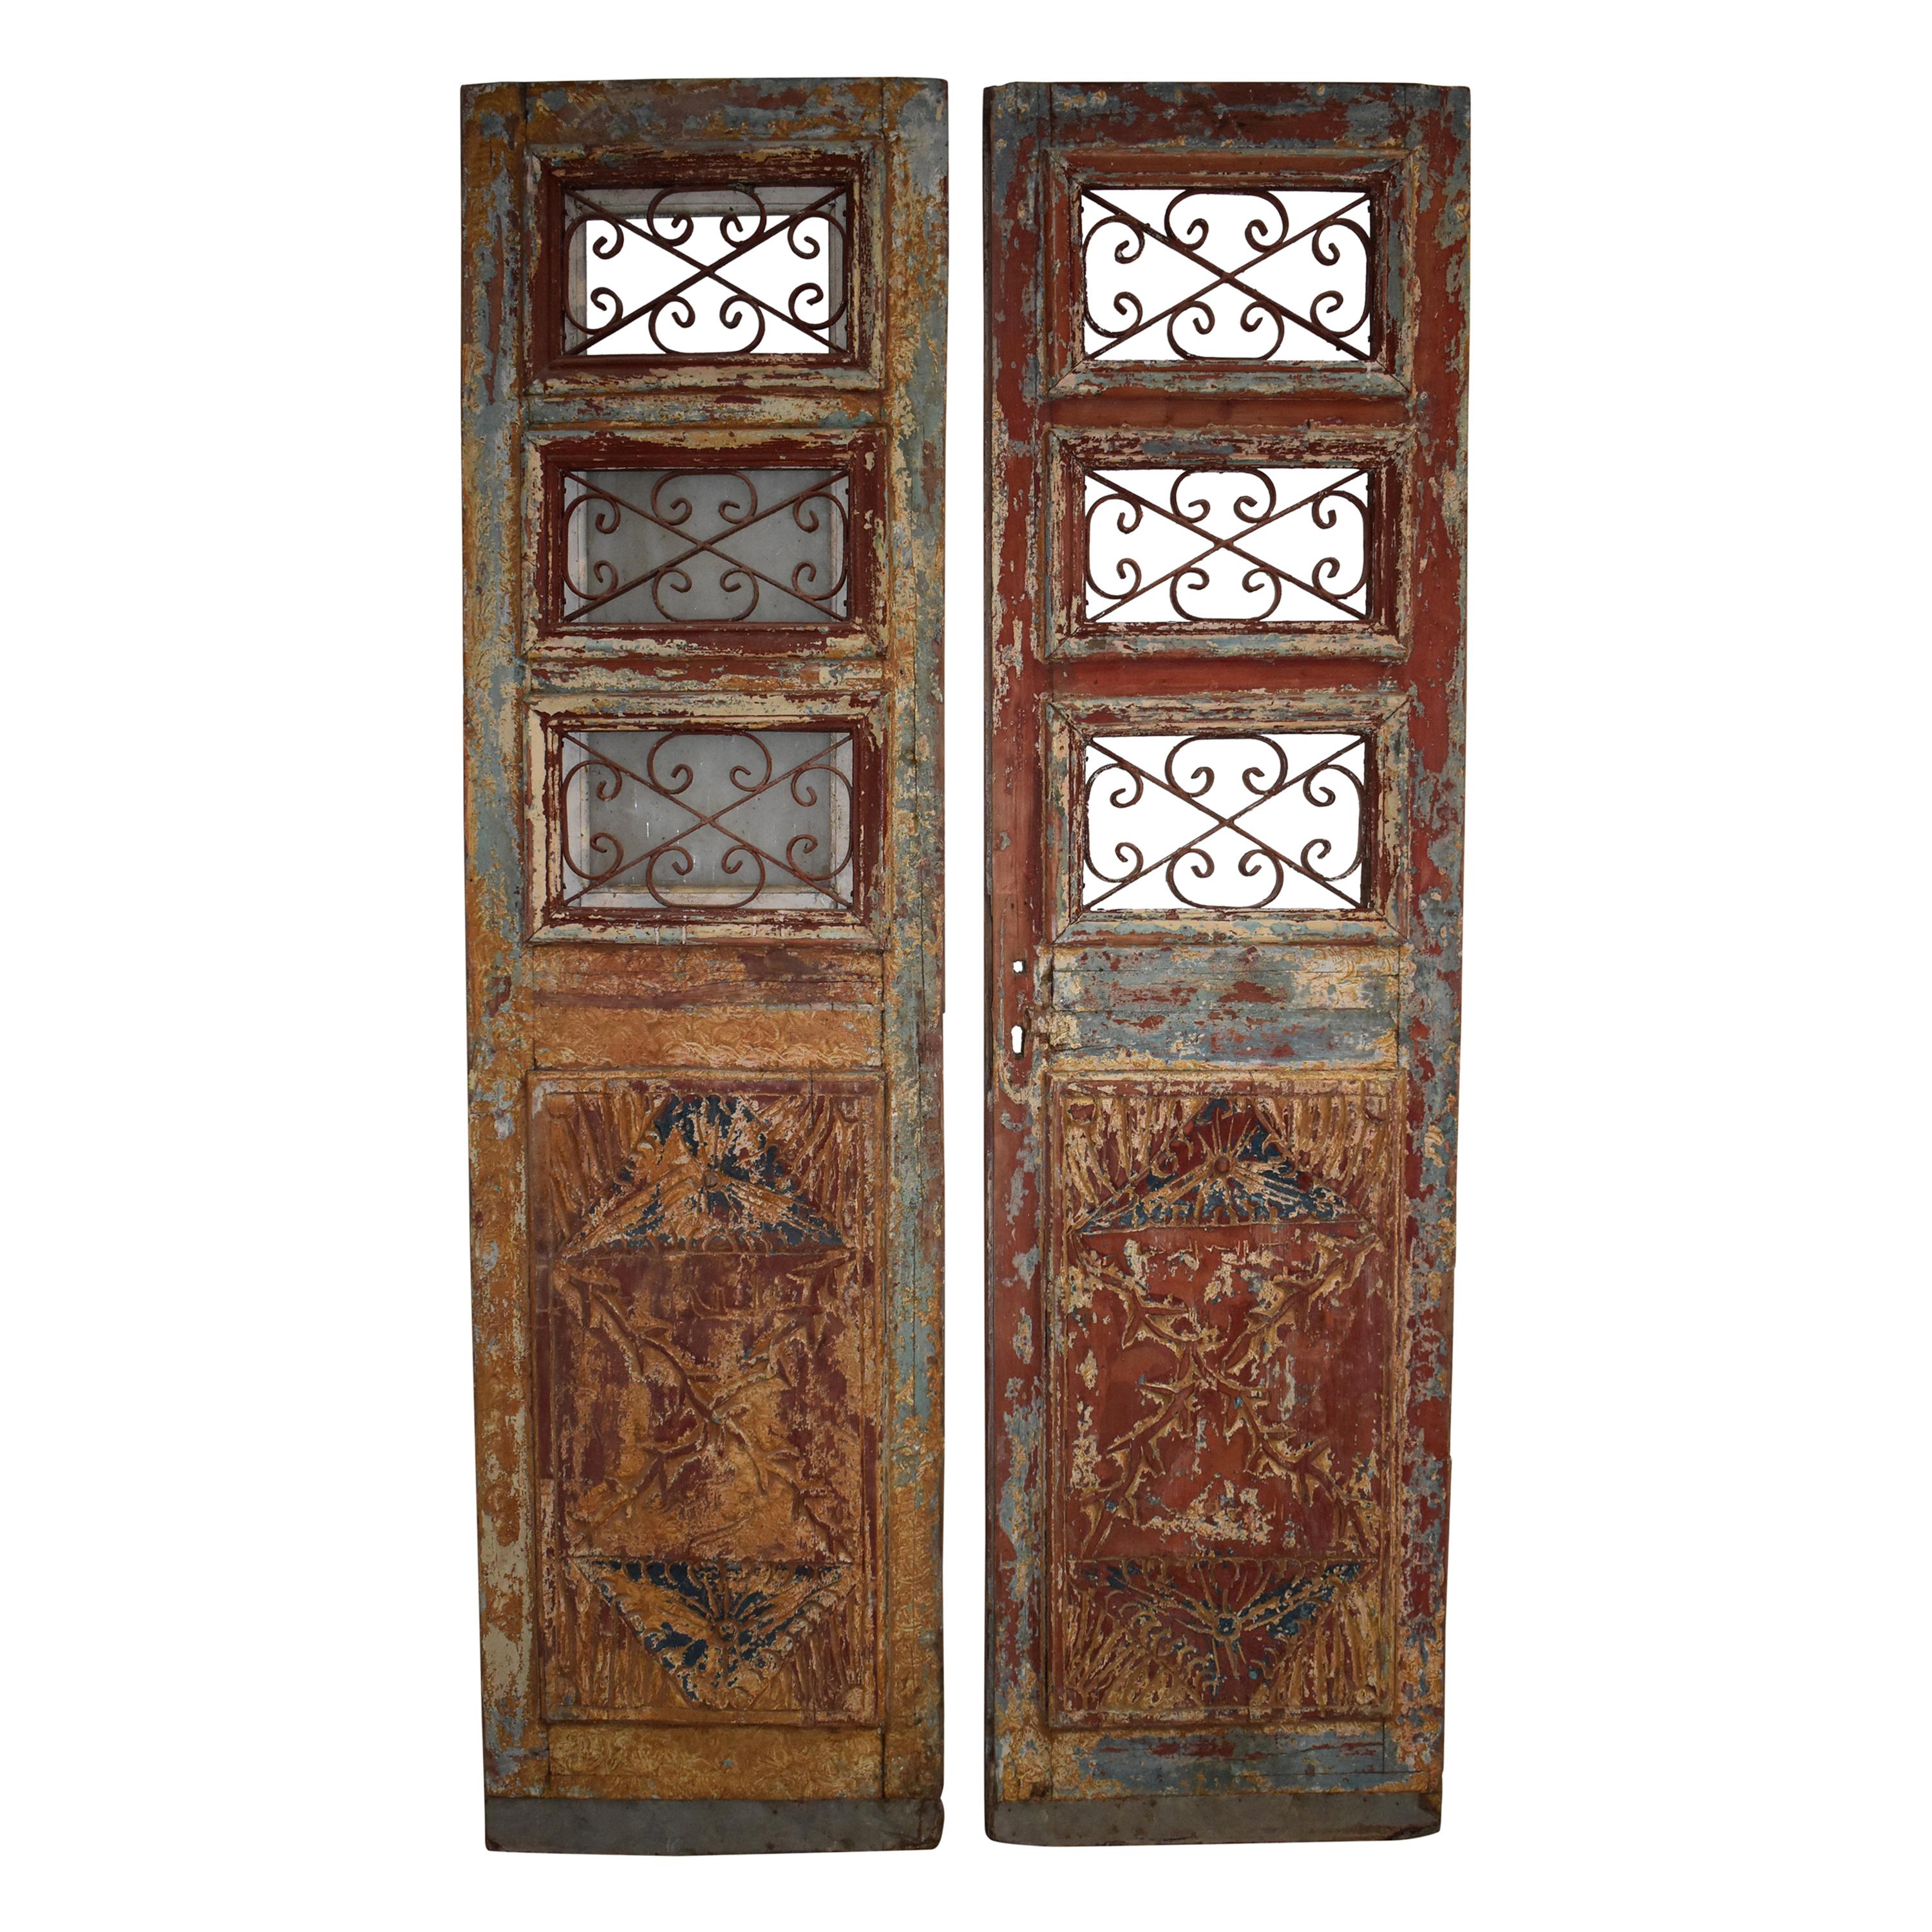 Egyptian Doors, circa 1900